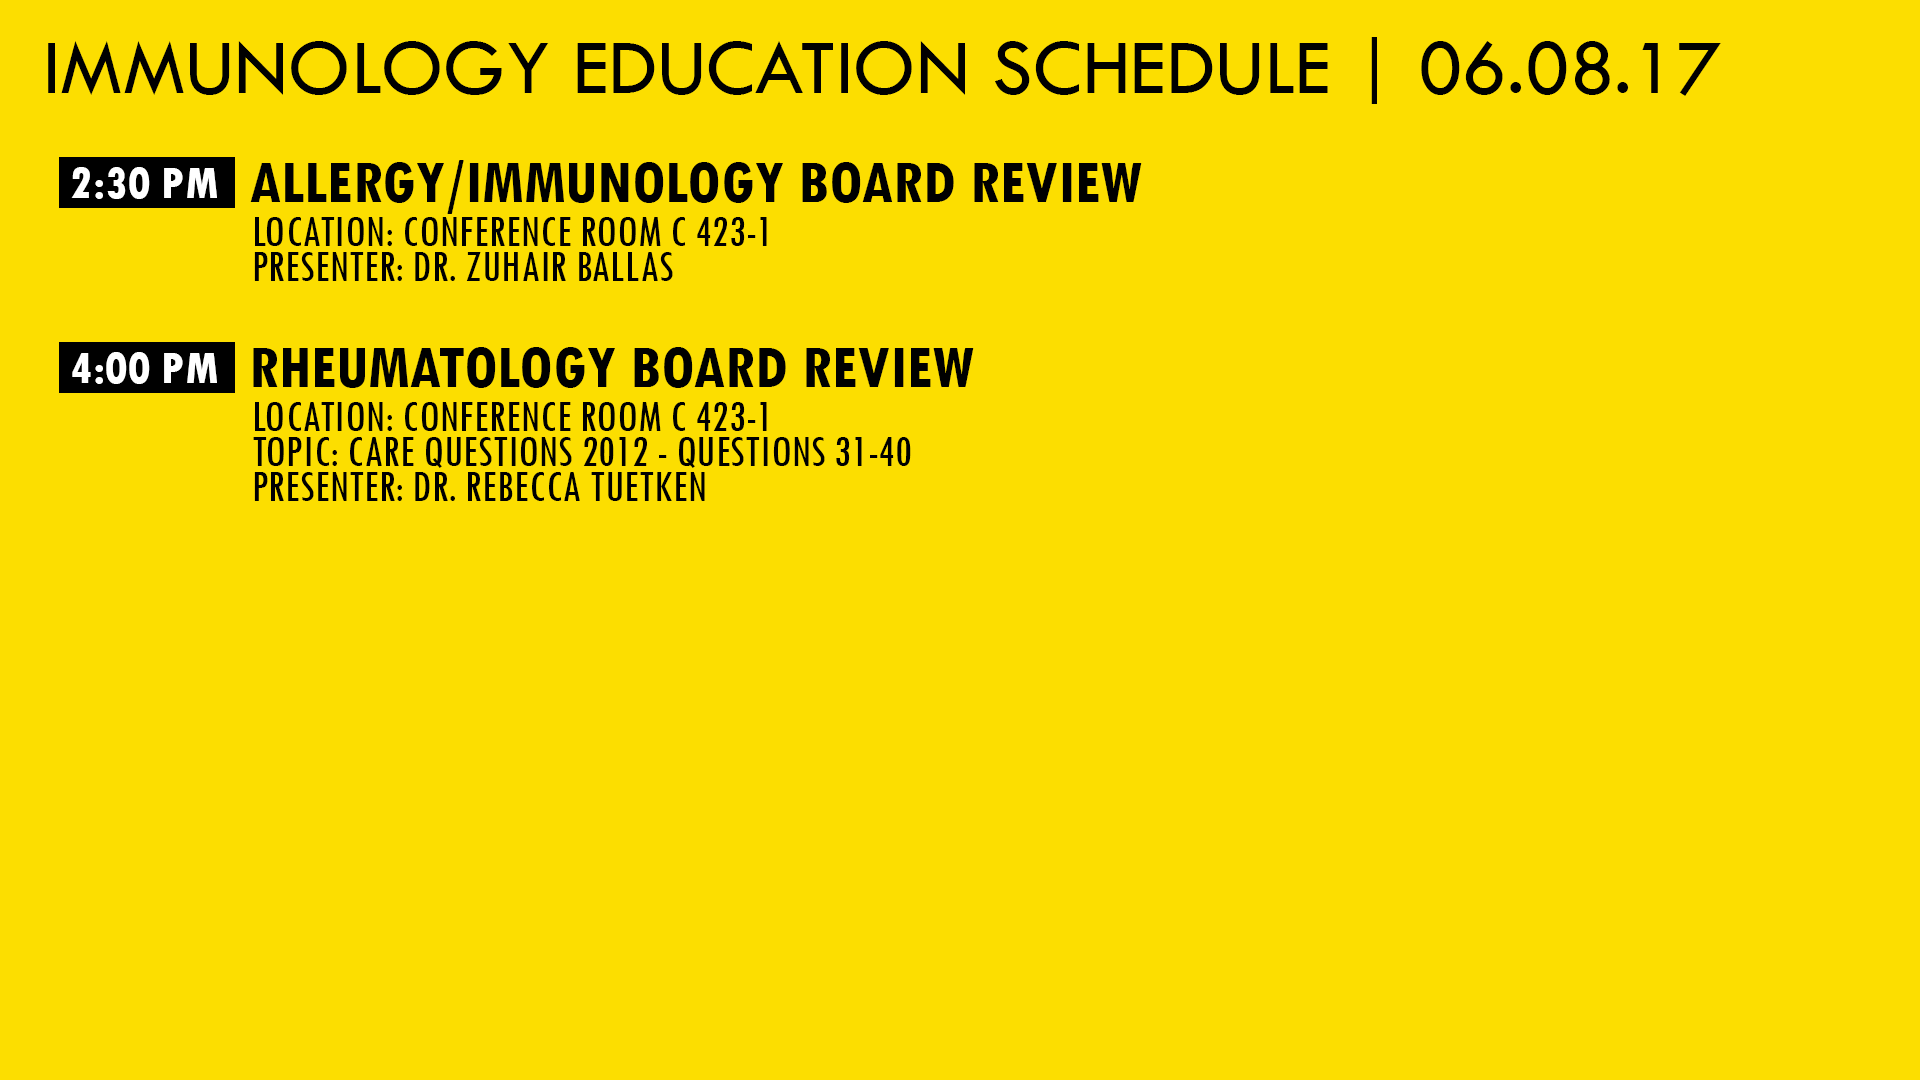 immunology_education_thursday_06.08